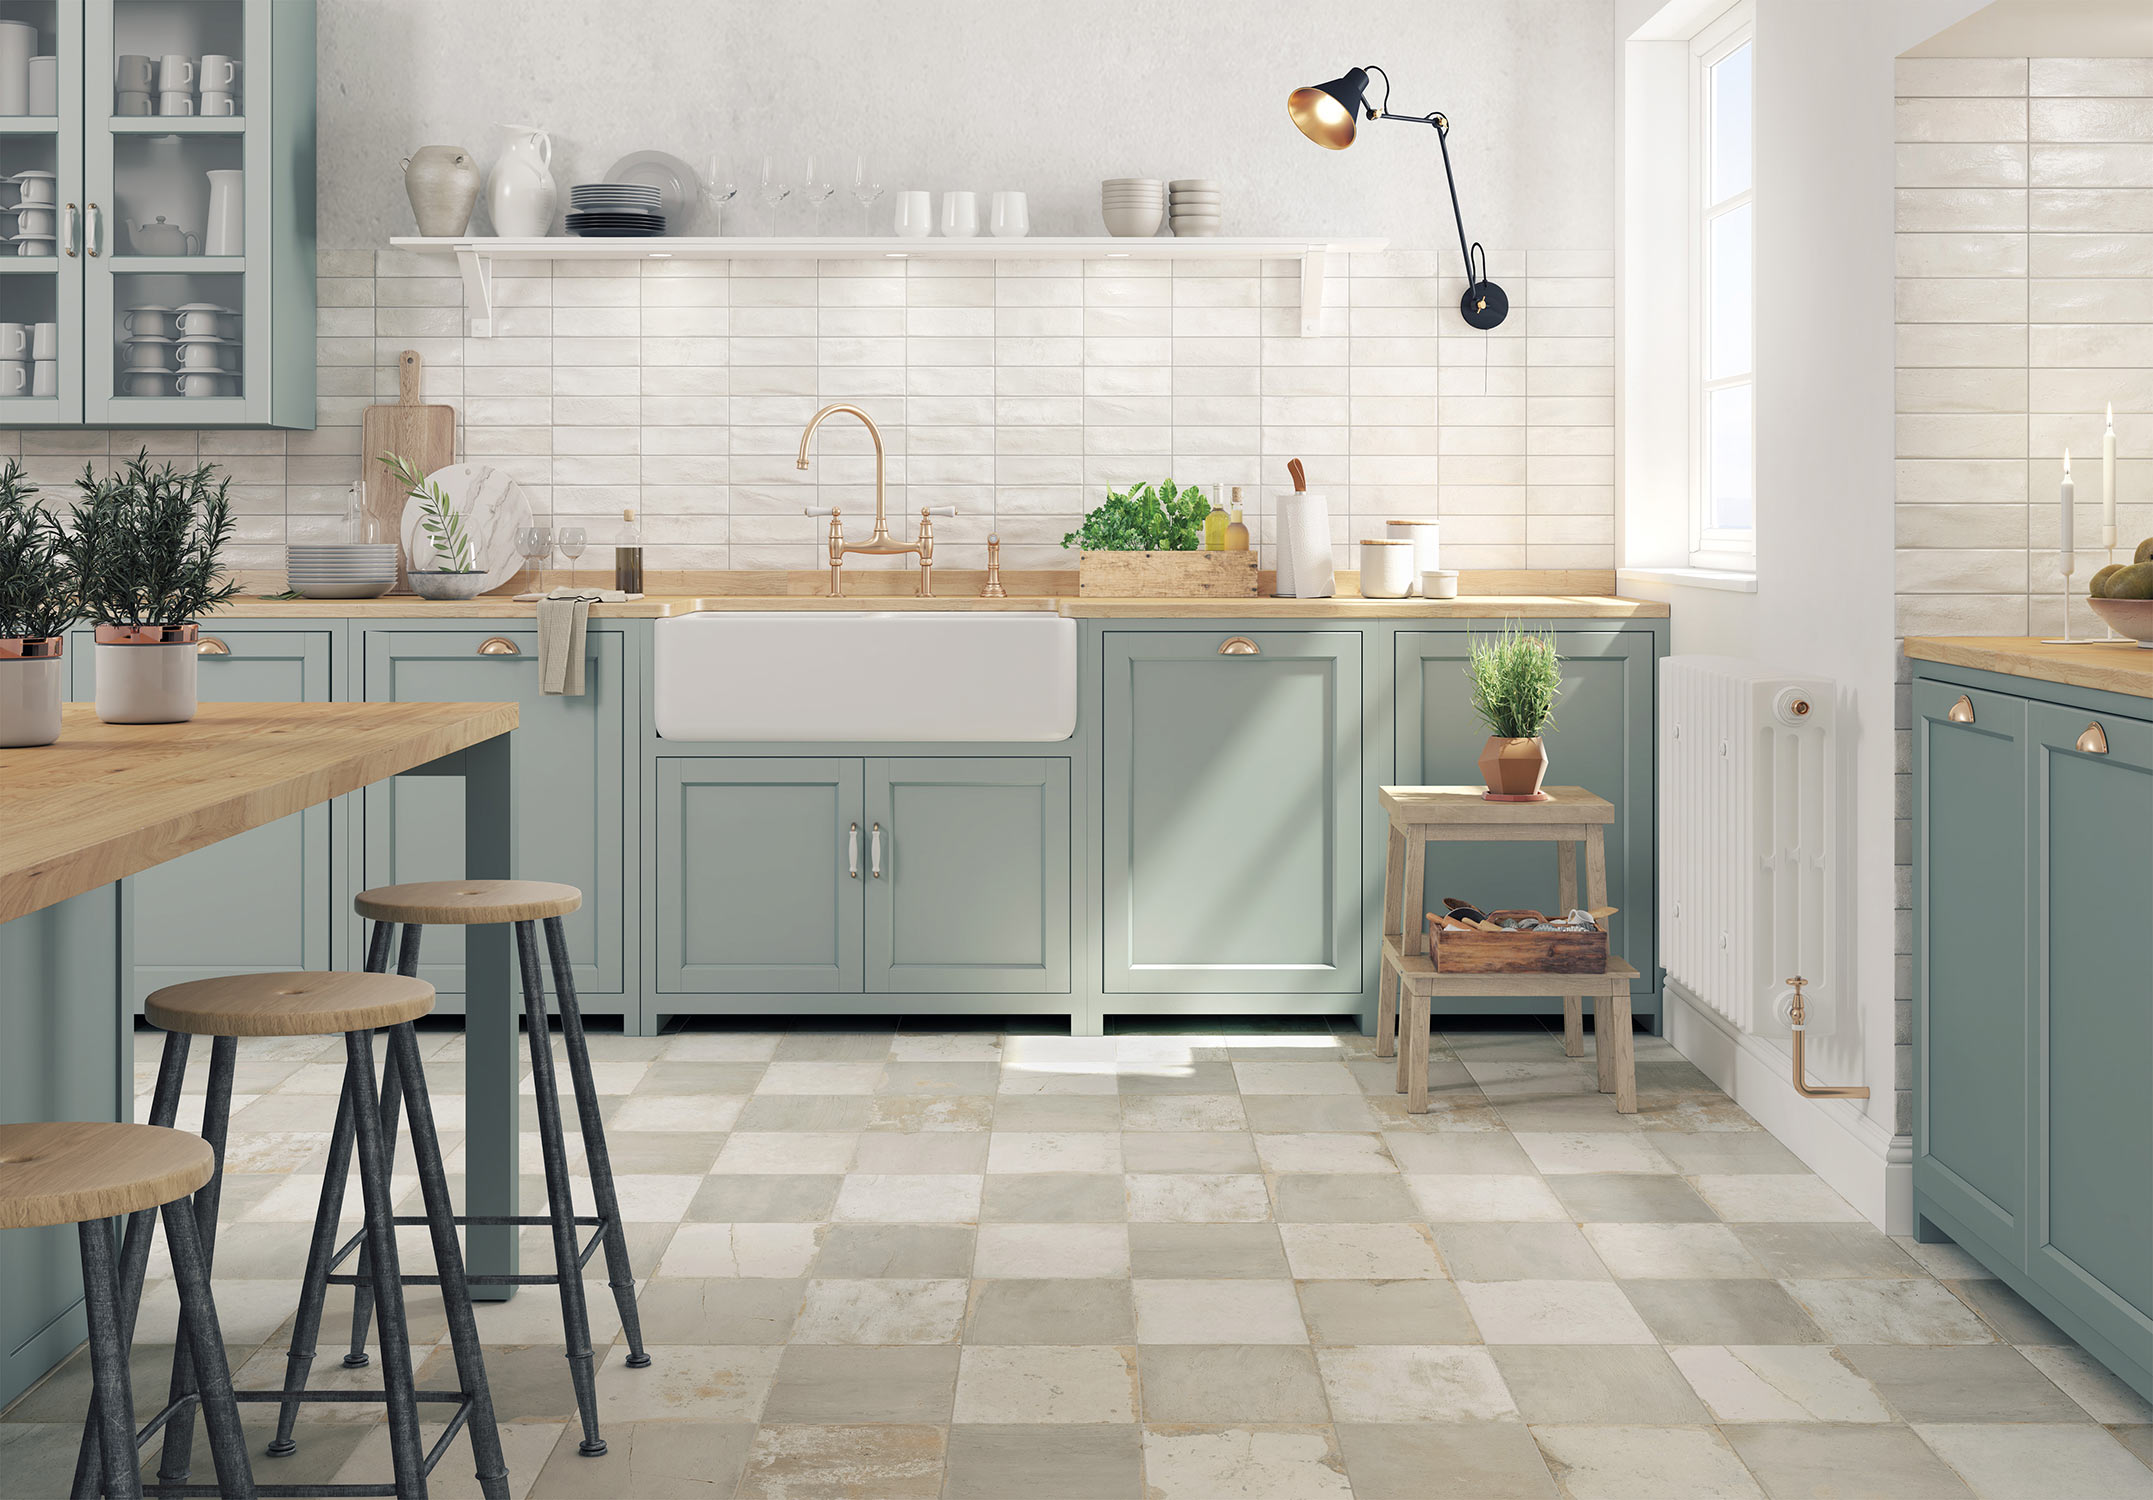 cocina de estilo provenzal con azulejos vintage y muebles verdes